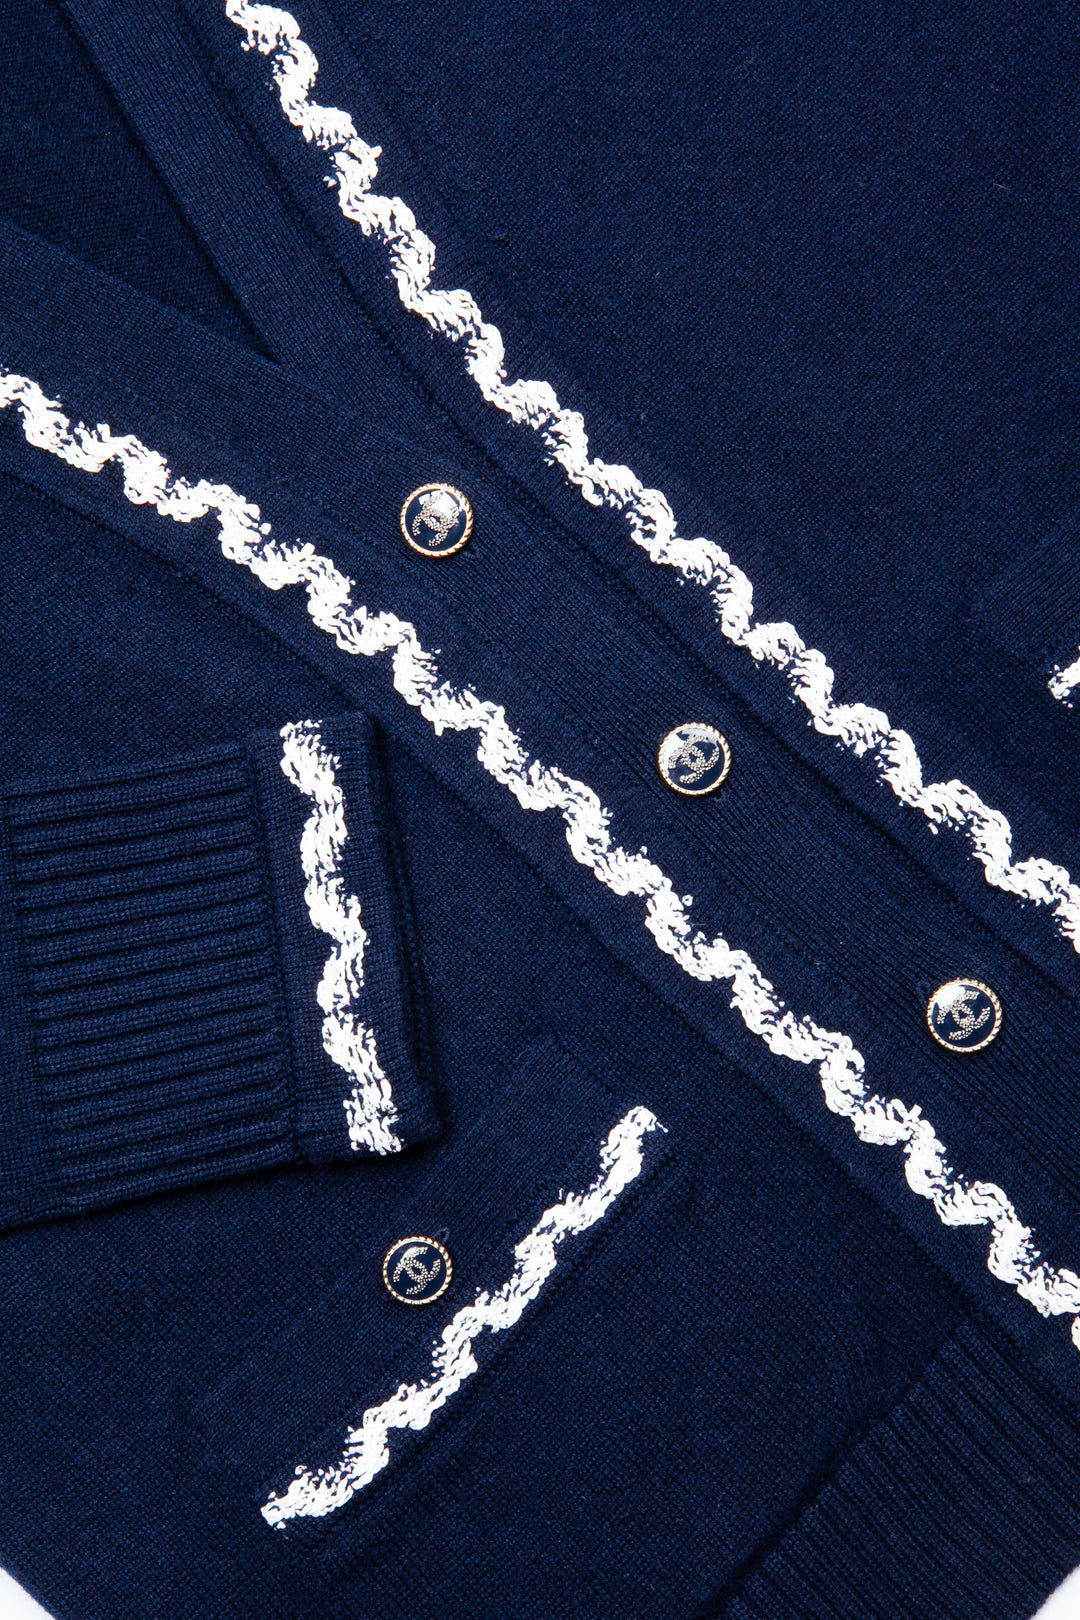 CHANEL 2021 Patch Pocket Knit Cardigan Navy